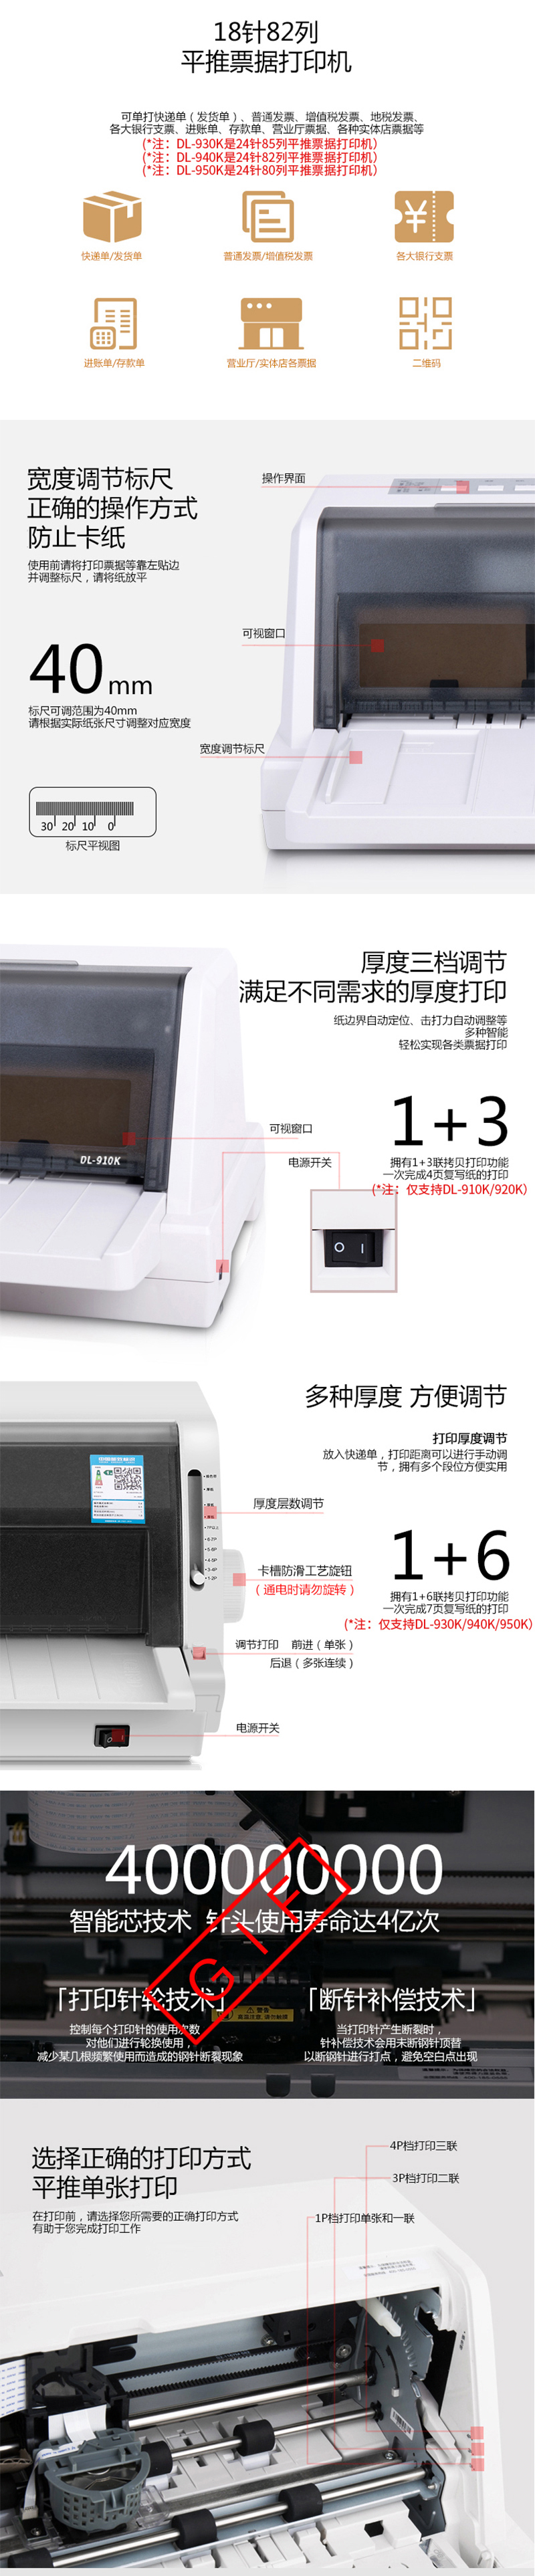 得力DL-940K 针式打印机